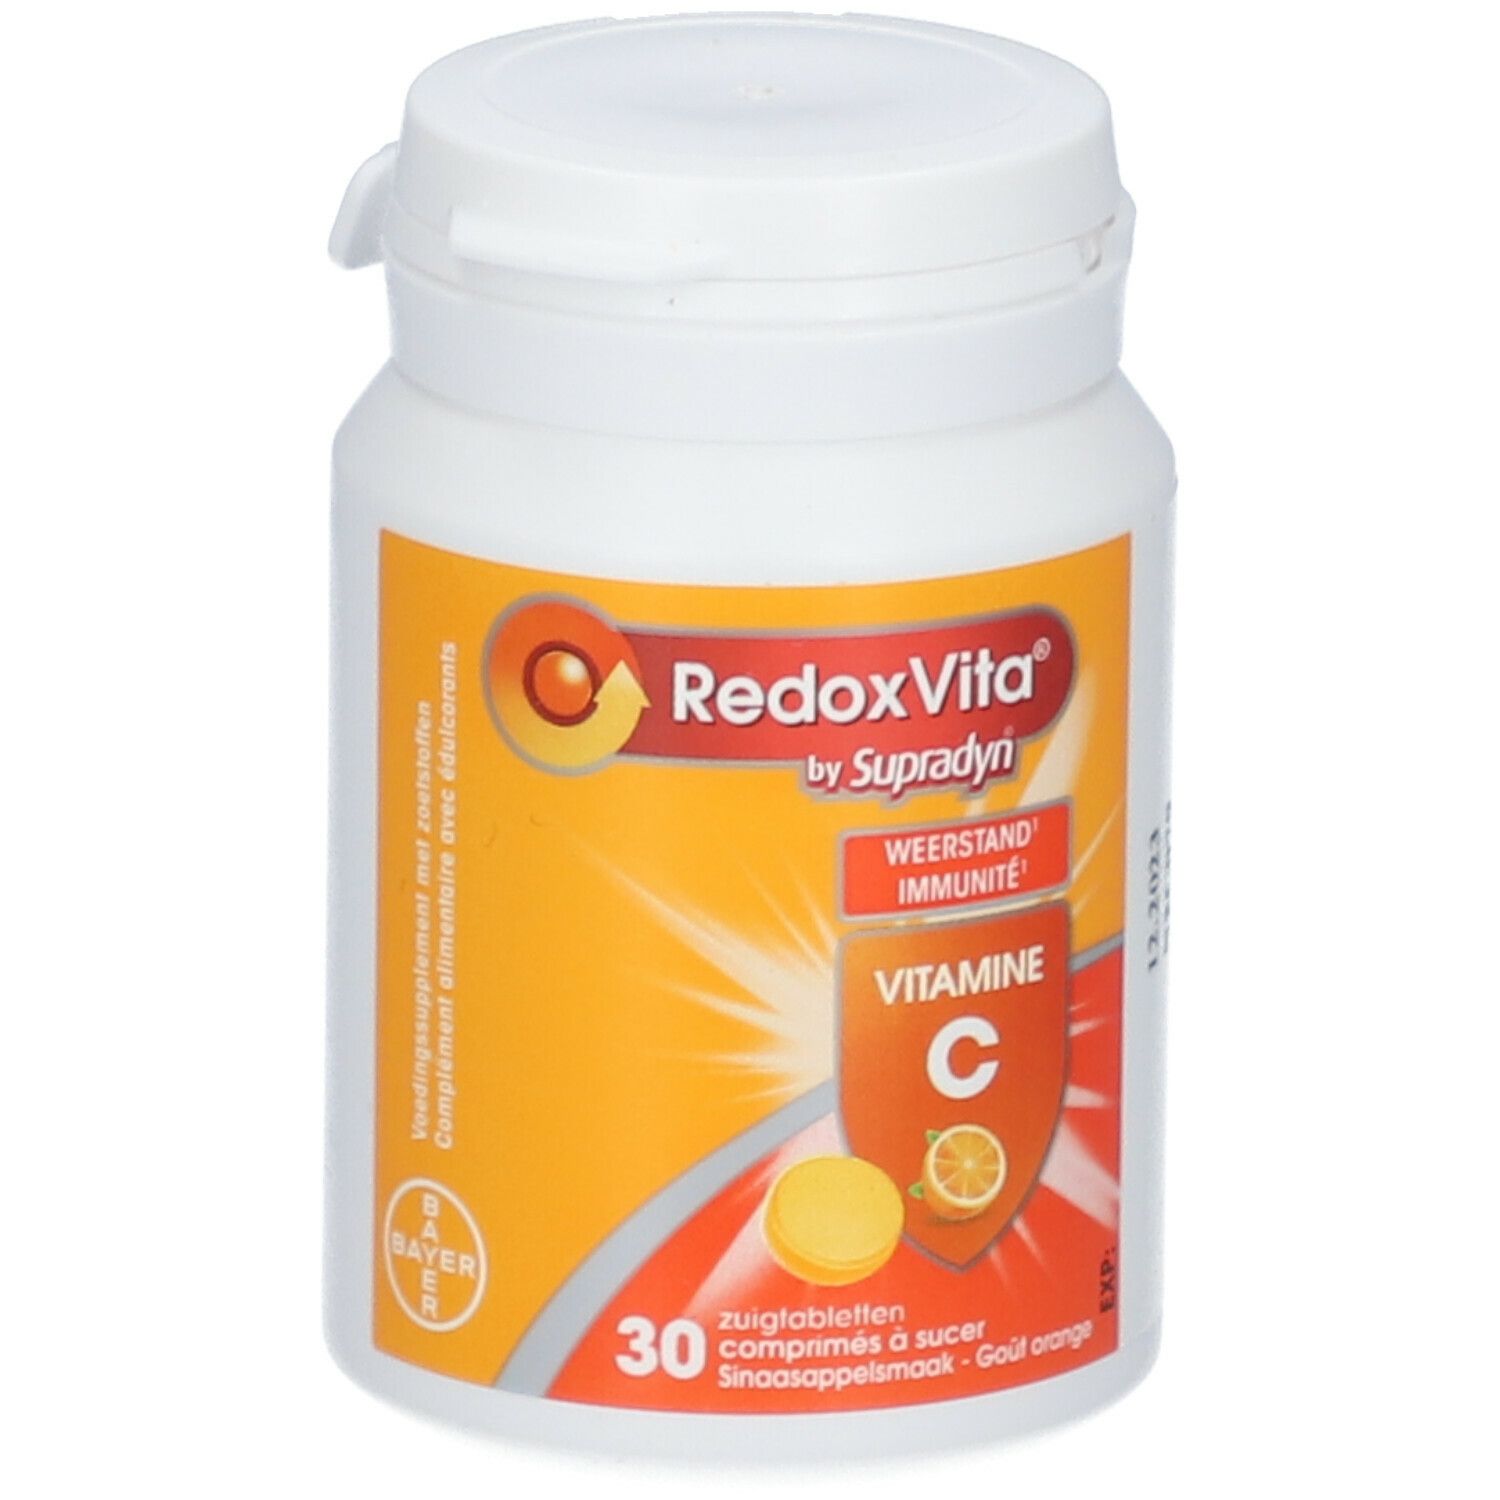 RedoxVita Vitamine C 500 mg Immunité